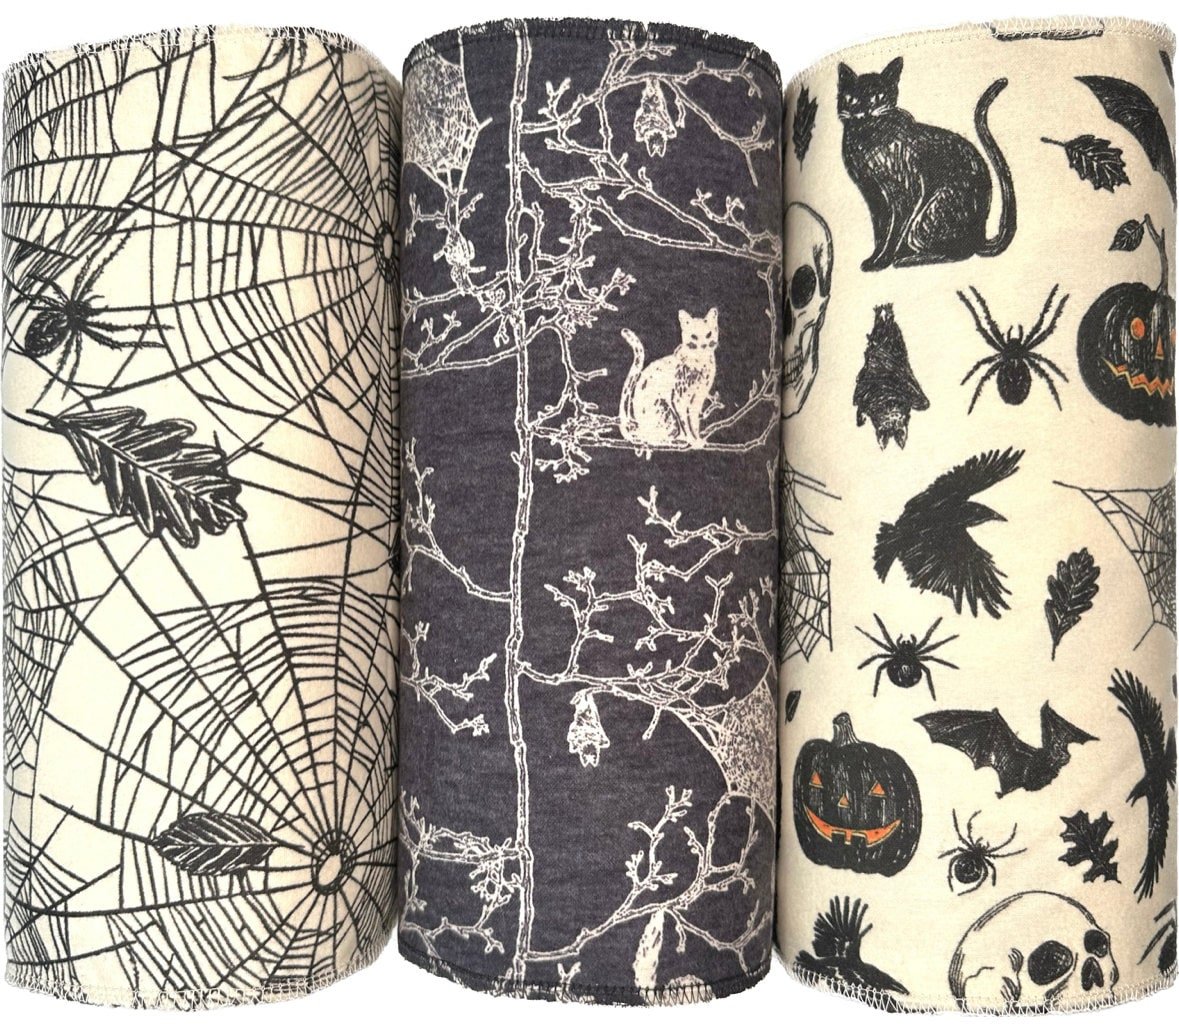 Spooky Trio Paperless Towels || Unpaper Towels || Zero Waste Halloween Kitchen